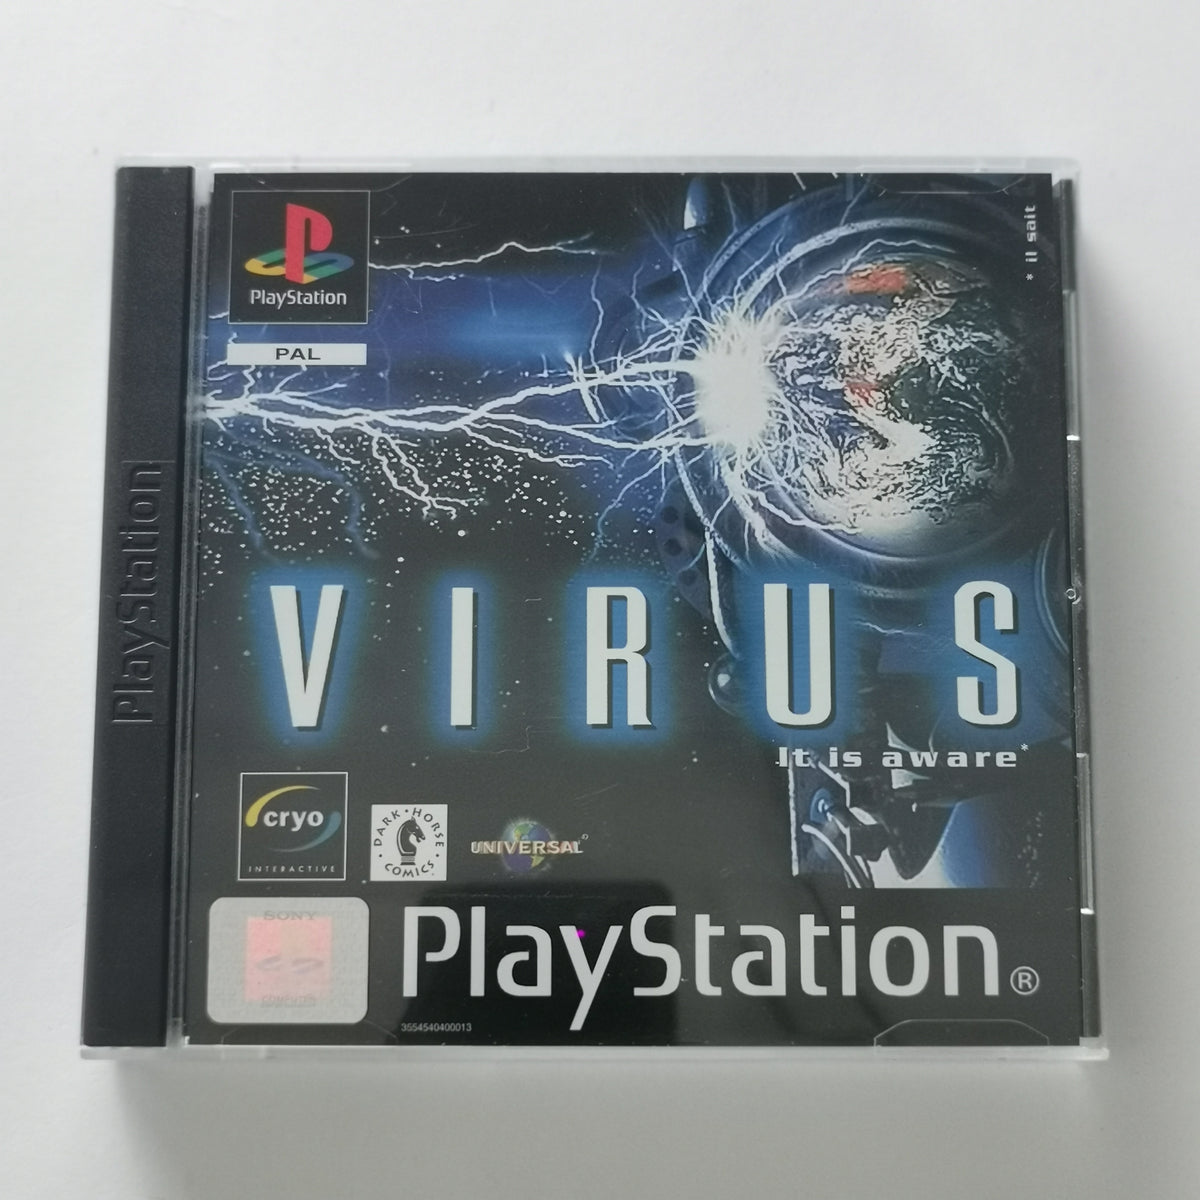 Virus Playstation 1 [PS1]